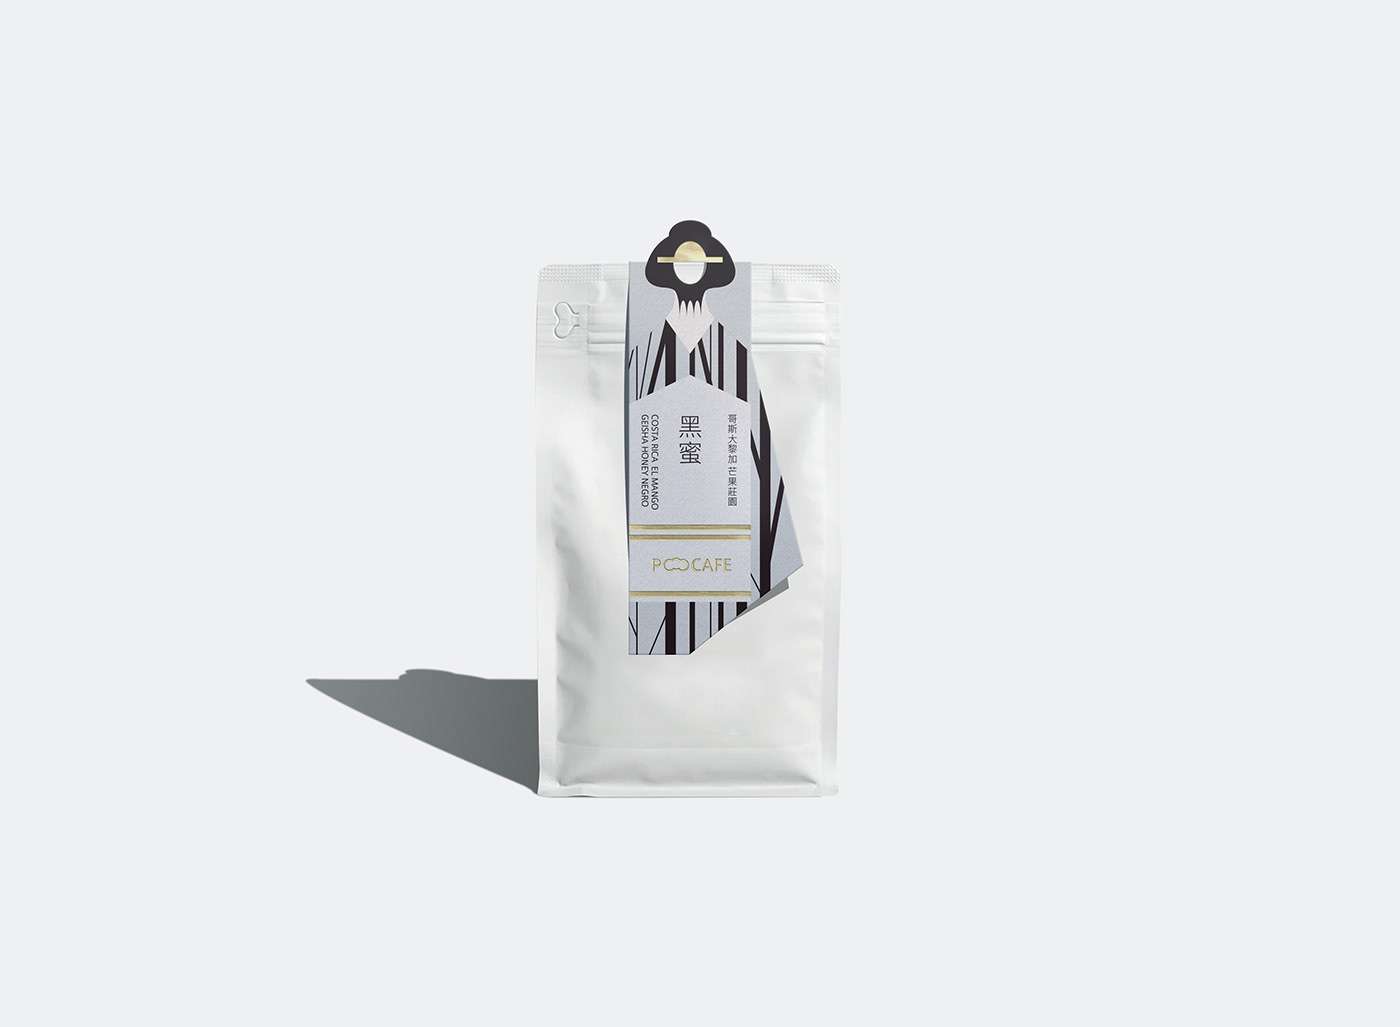 艺伎咖啡系列包装设计案例赏析 